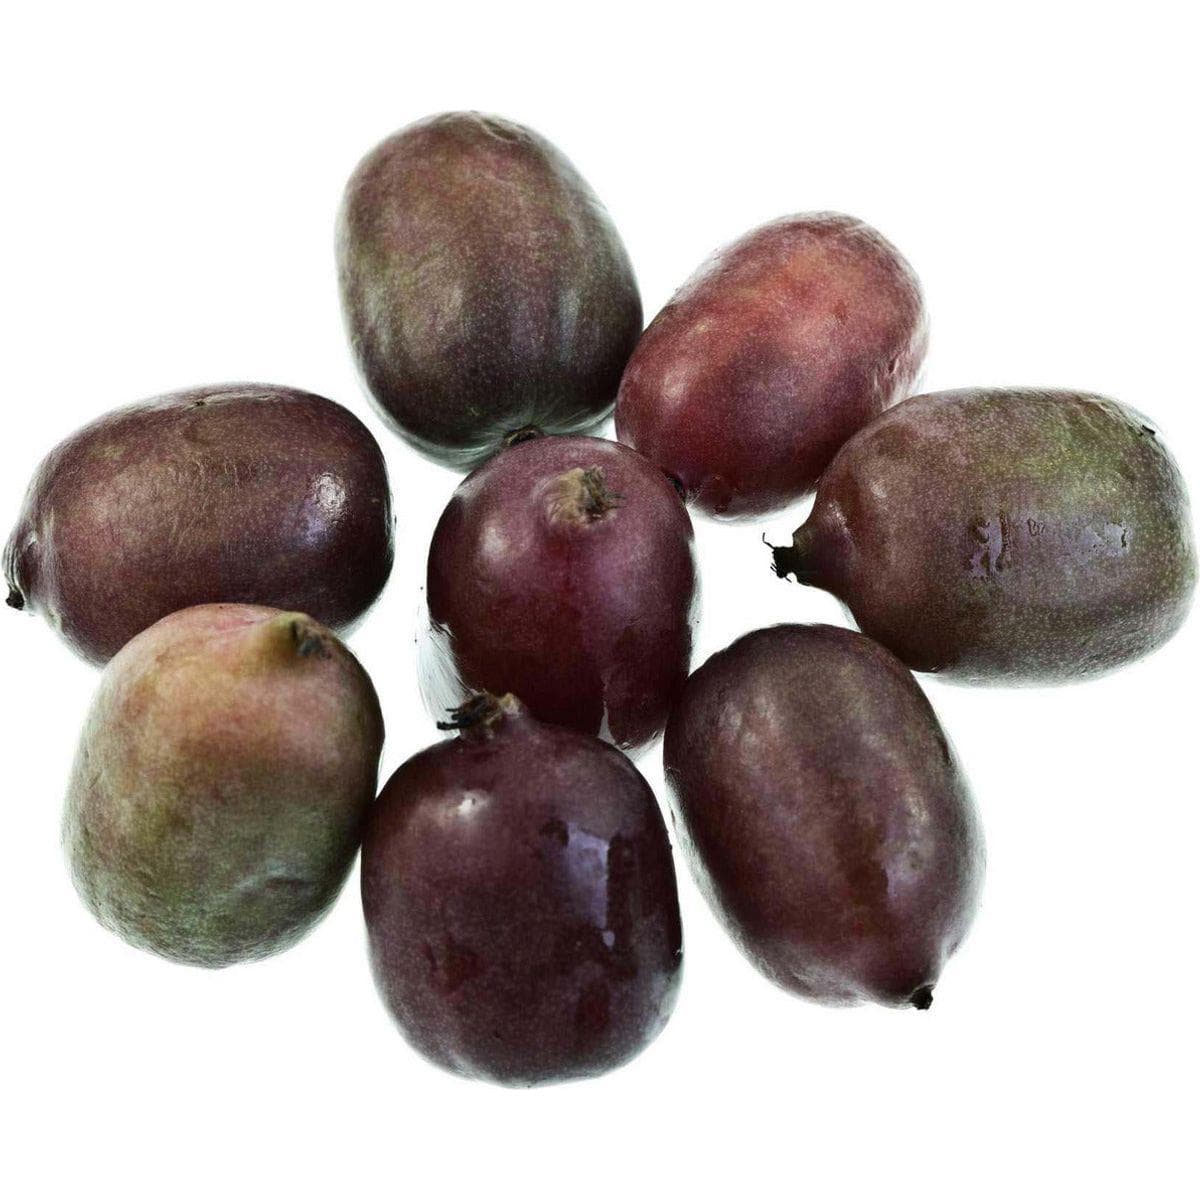 ackerbaum Kiwibeerenpflanze - Purpurea Sadowa kaufen